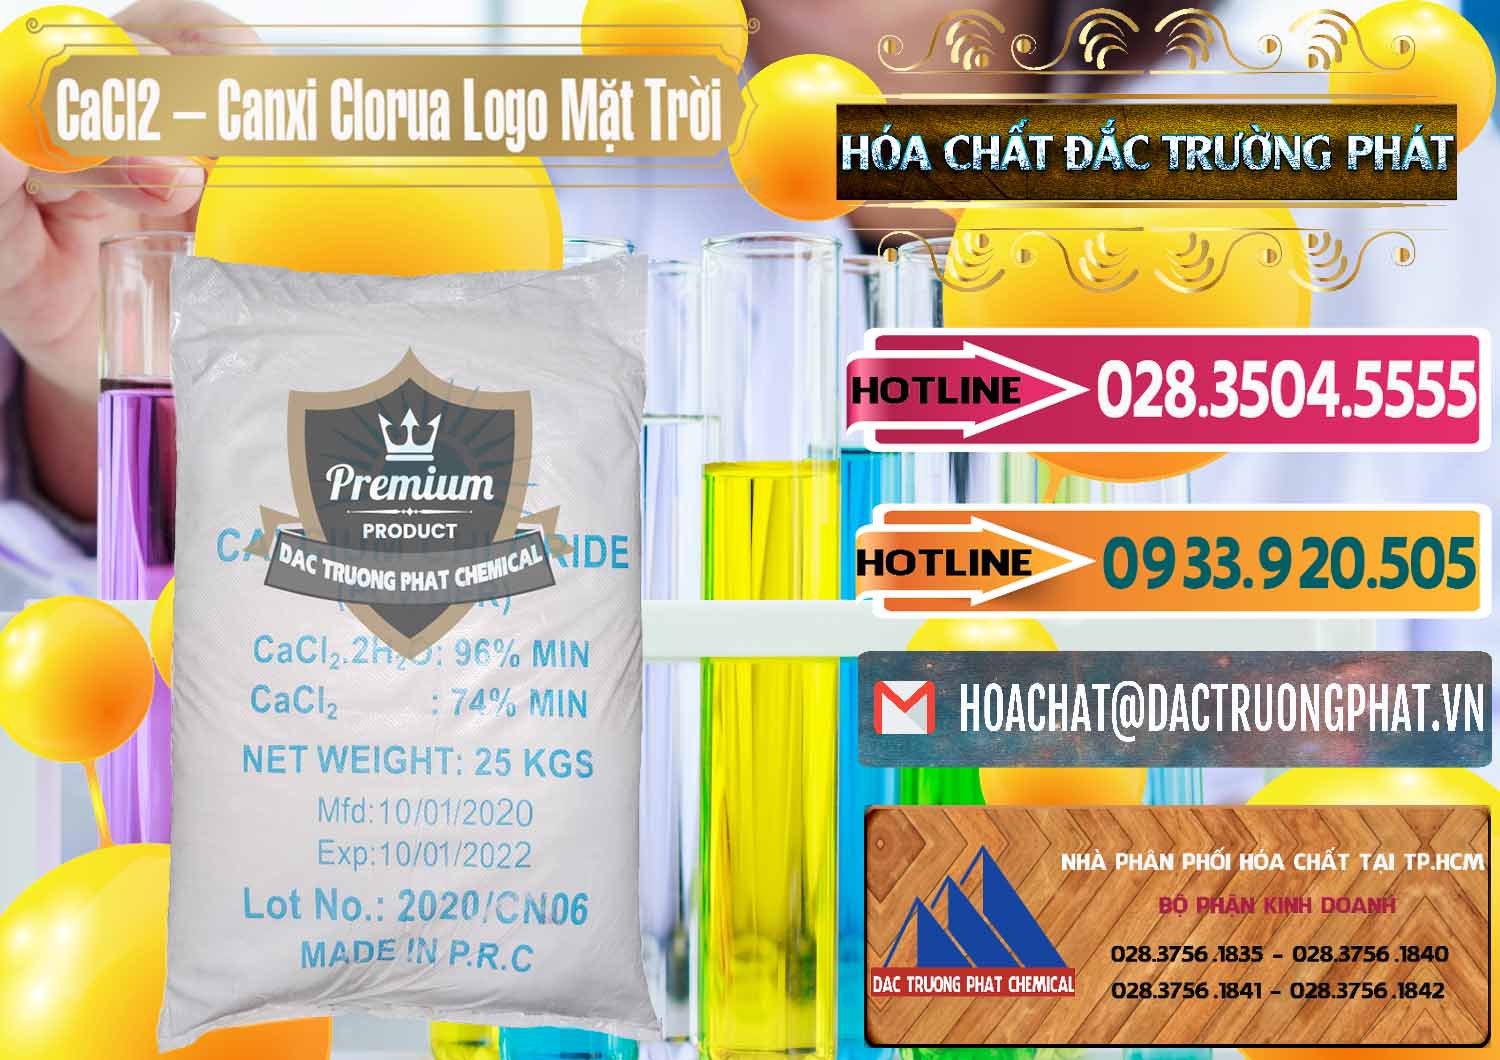 Nhà cung cấp _ bán CaCl2 – Canxi Clorua 96% Logo Mặt Trời Trung Quốc China - 0041 - Công ty chuyên phân phối và bán hóa chất tại TP.HCM - dactruongphat.vn